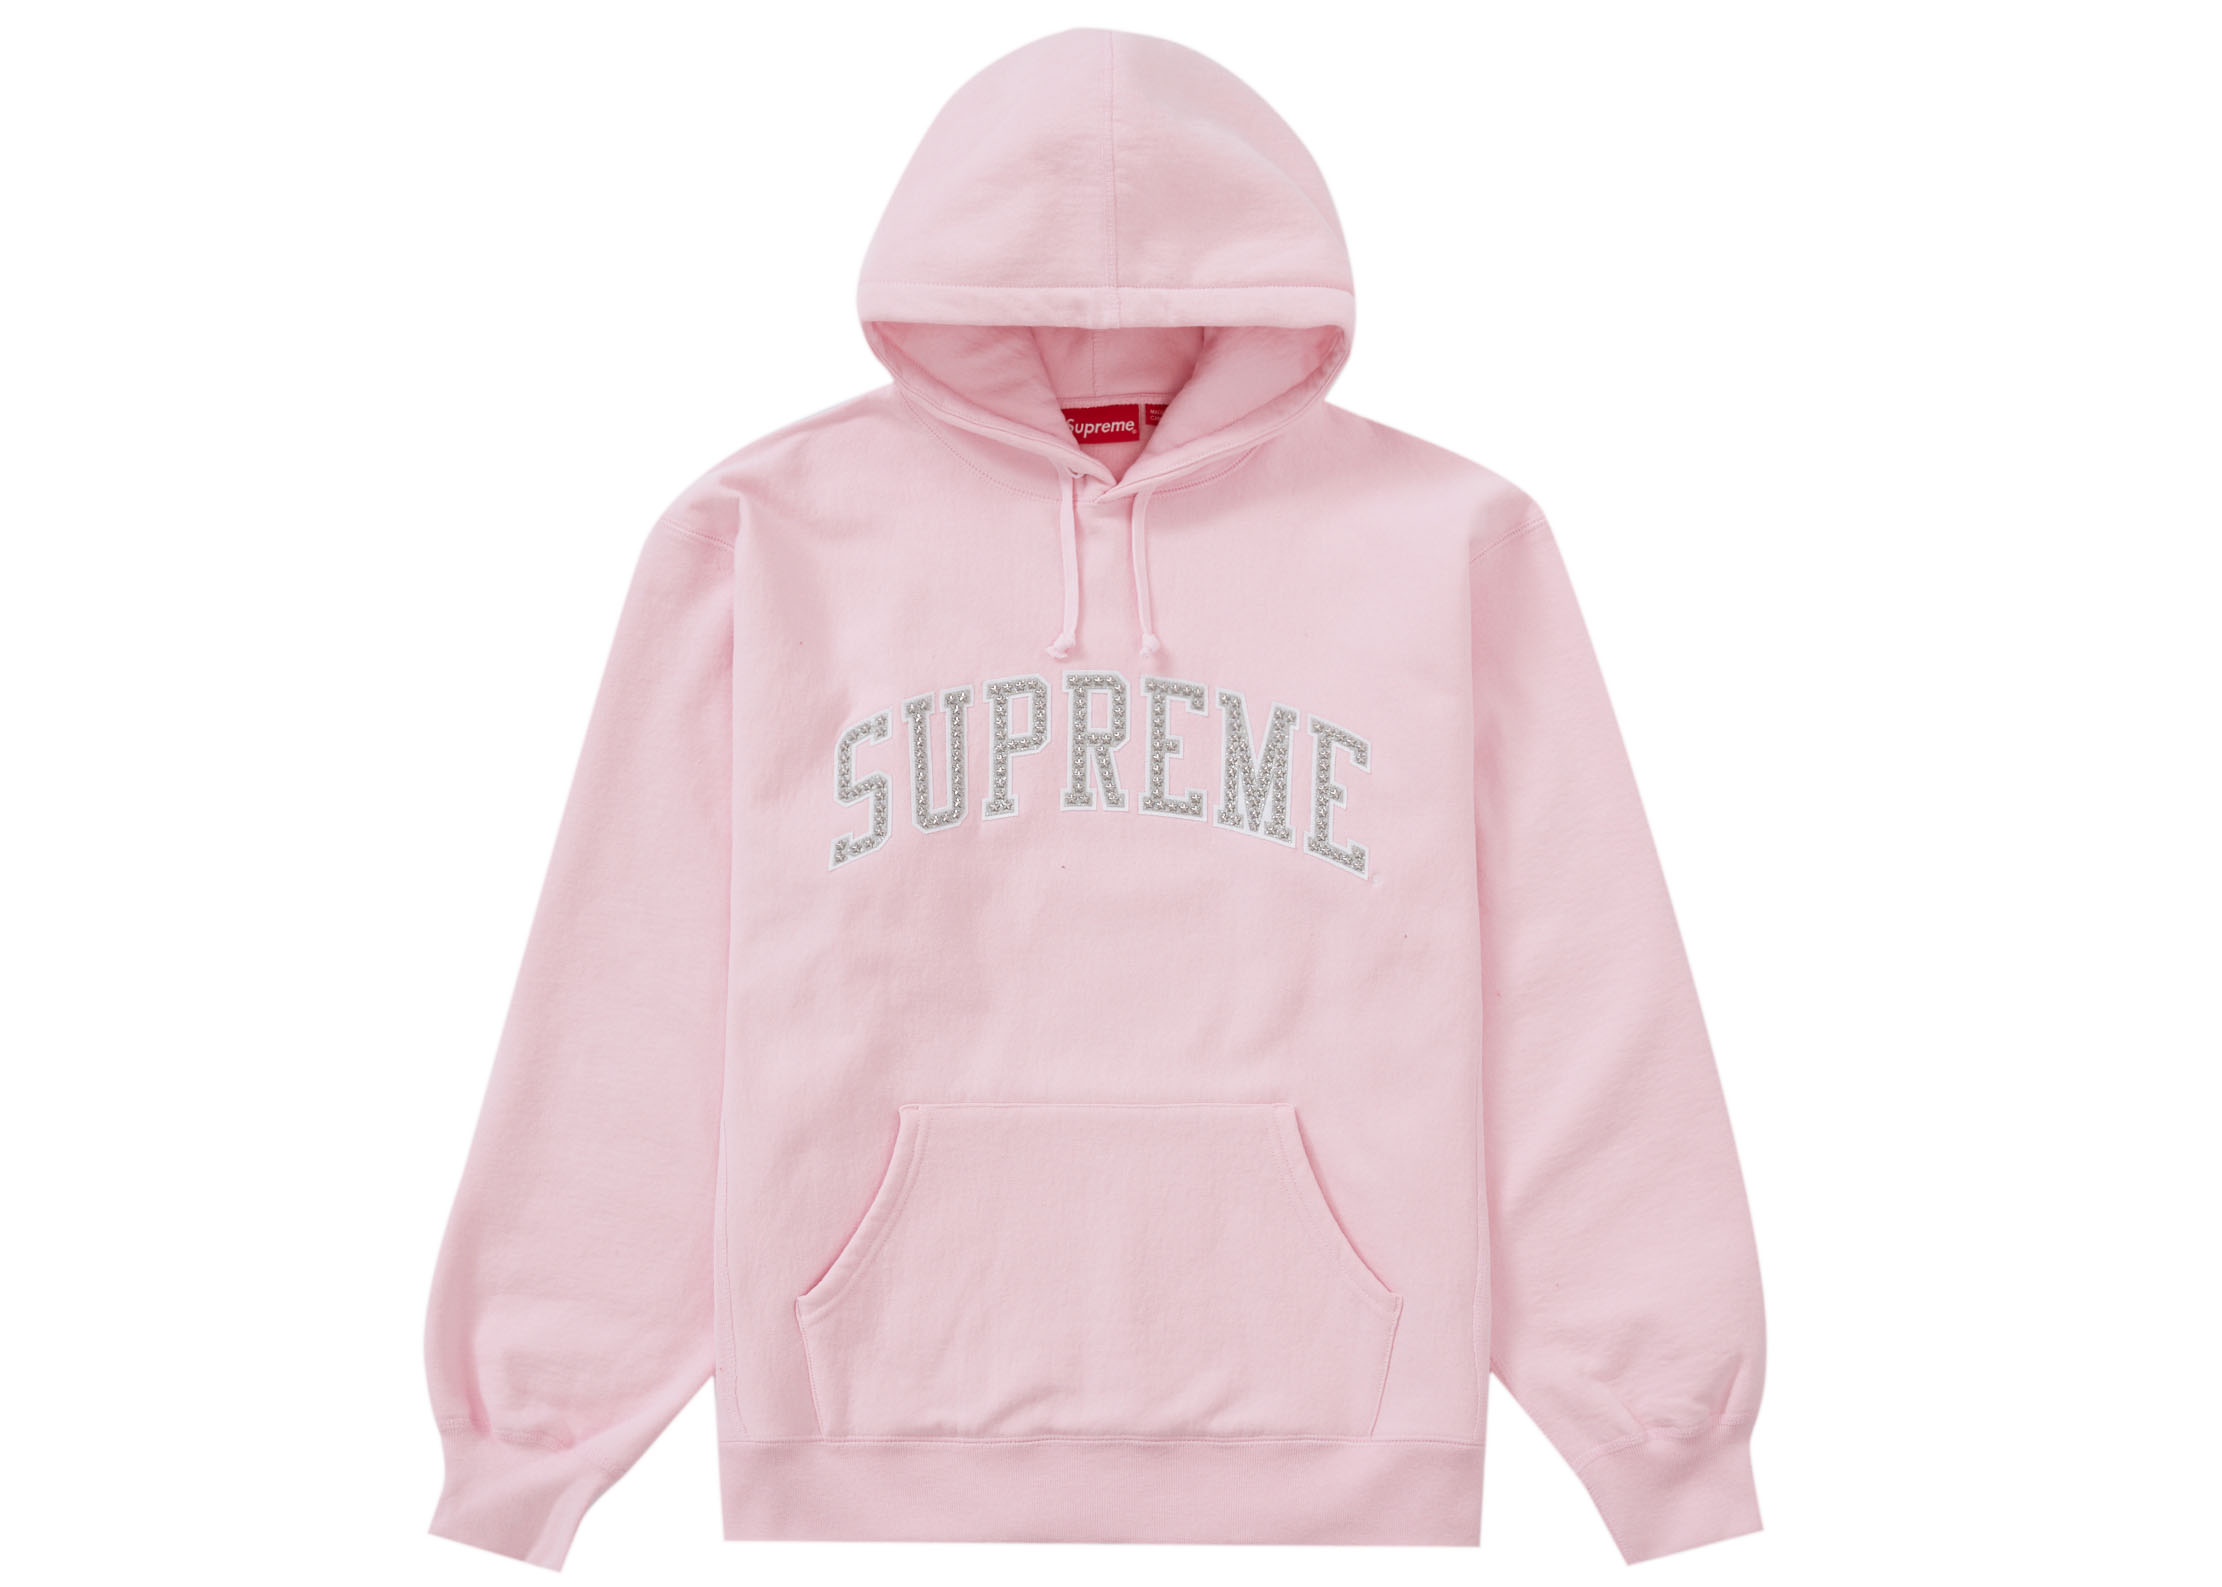 Streetwear Apparel - Release Date Supreme Tops/Sweatshirts